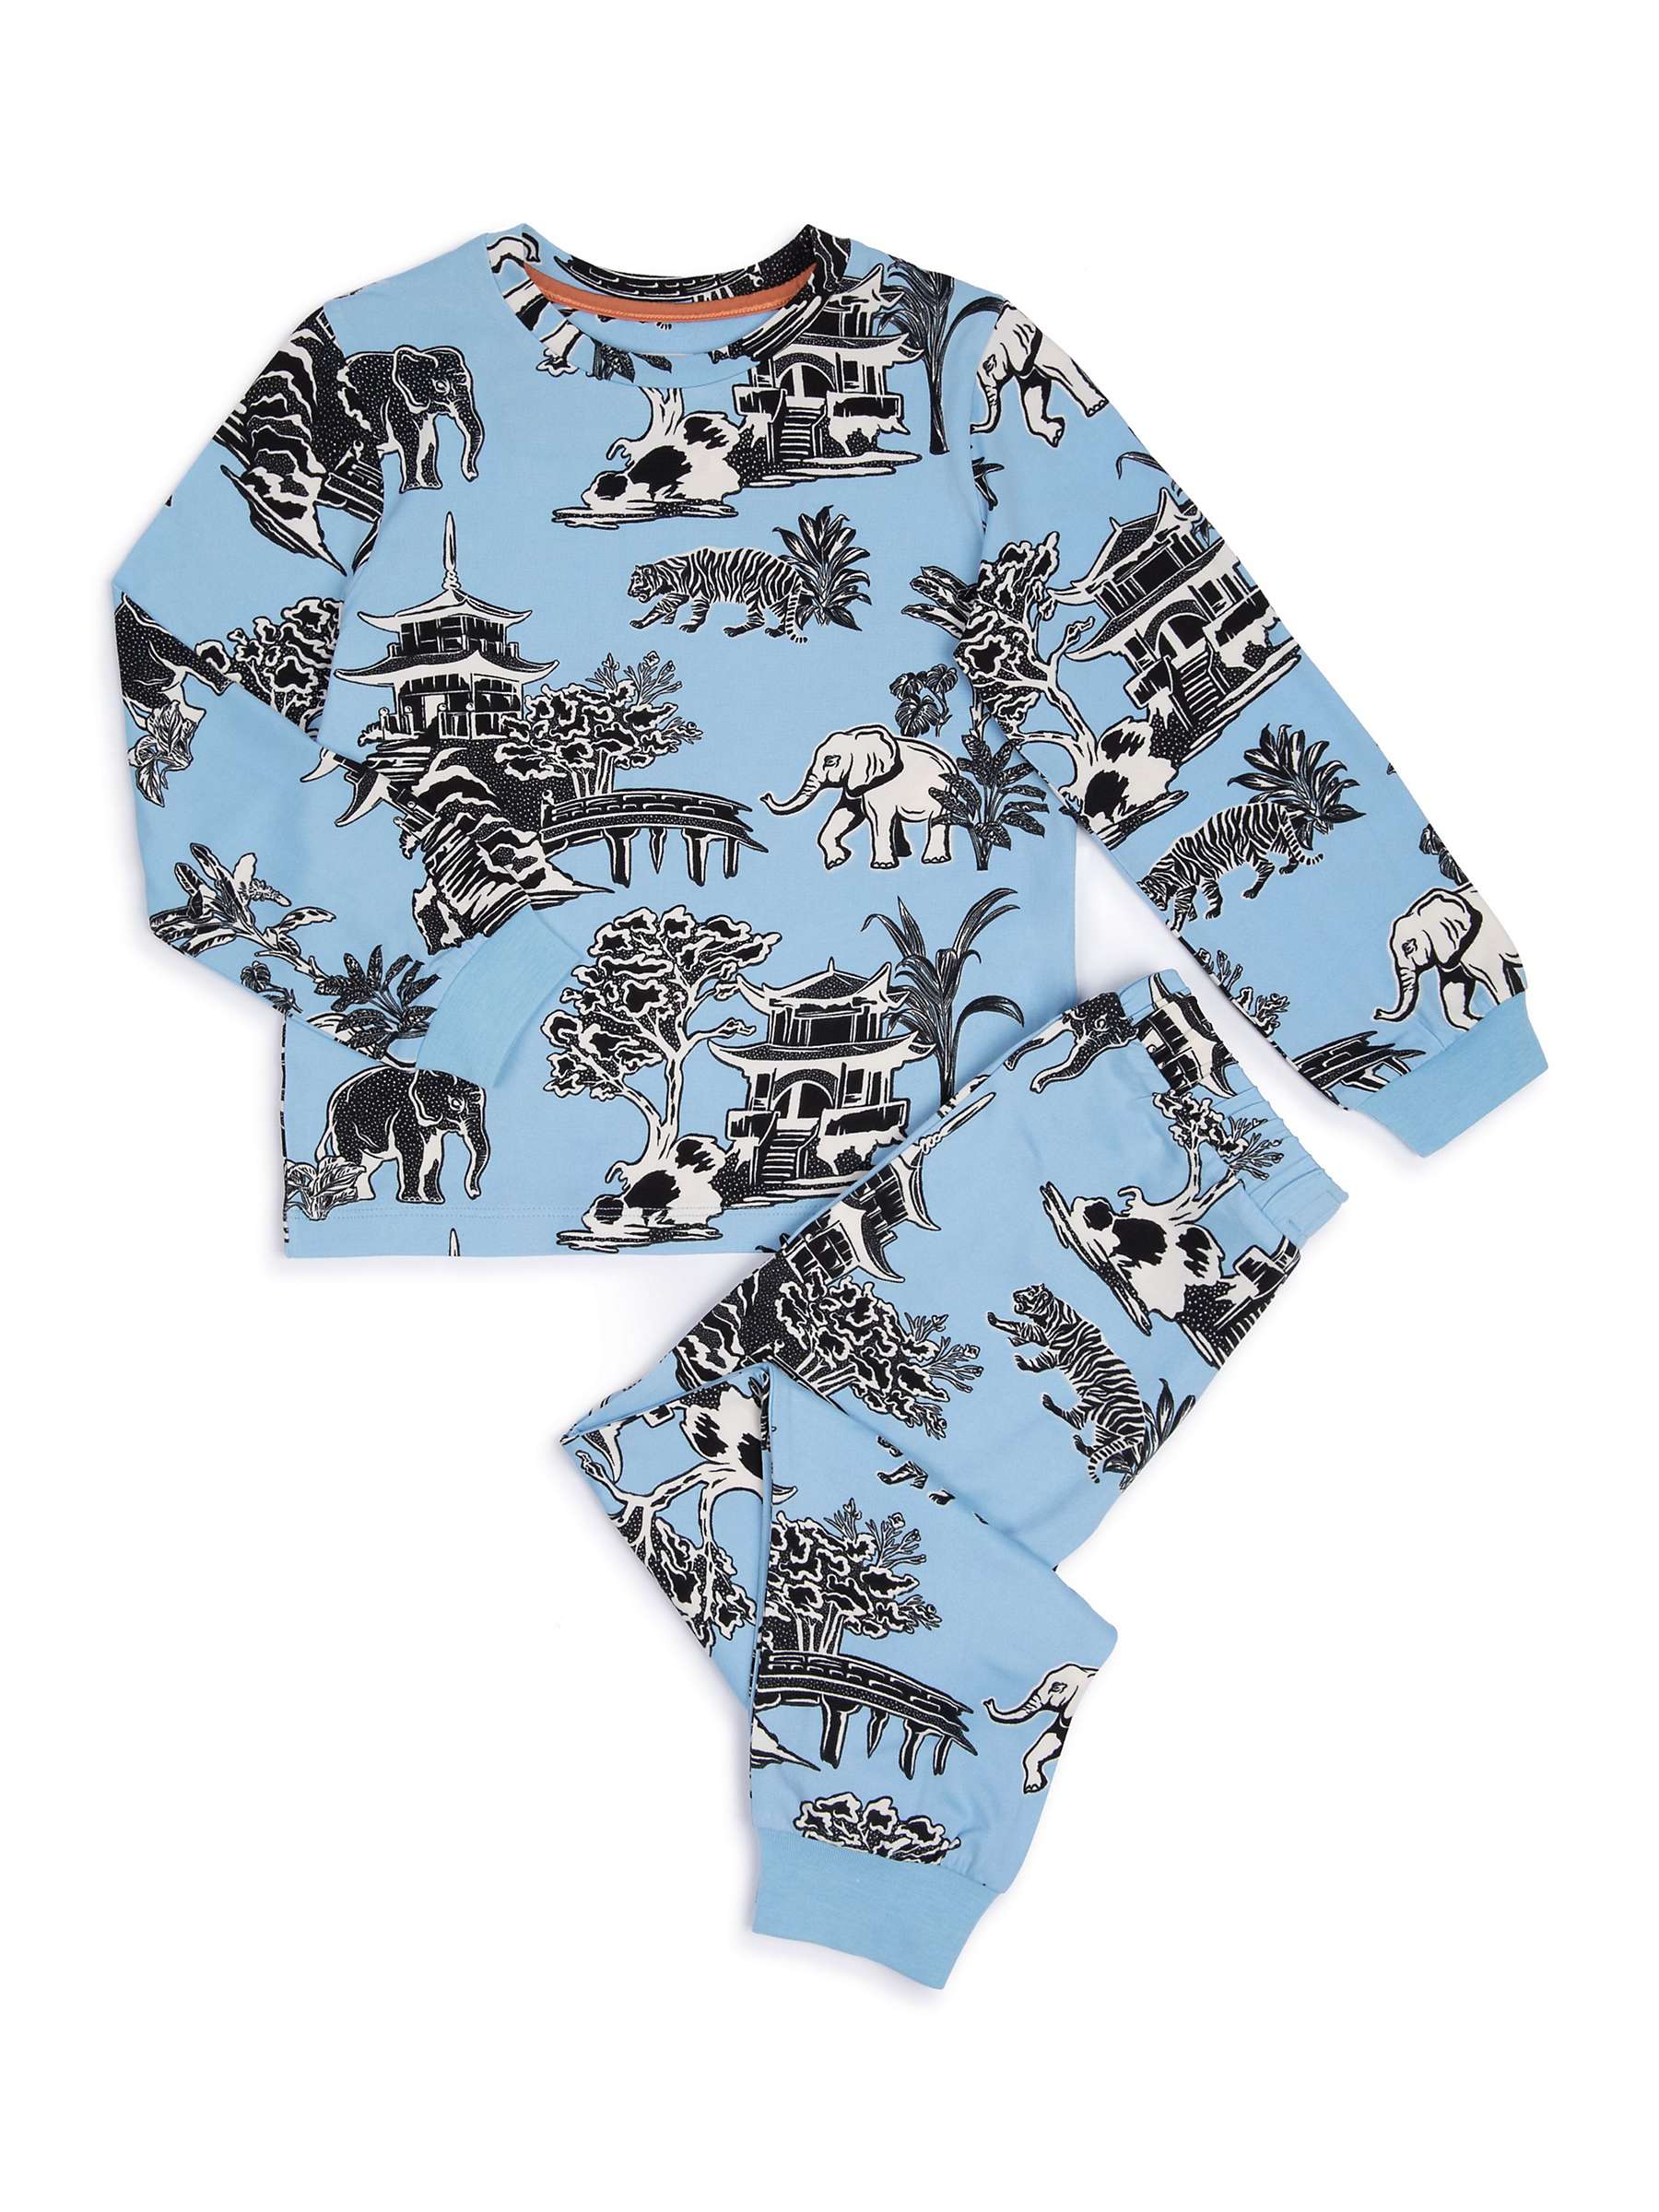 Buy Chelsea Peers Kids' Animal Garden Print Long Pyjama Set, Blue/Multi Online at johnlewis.com